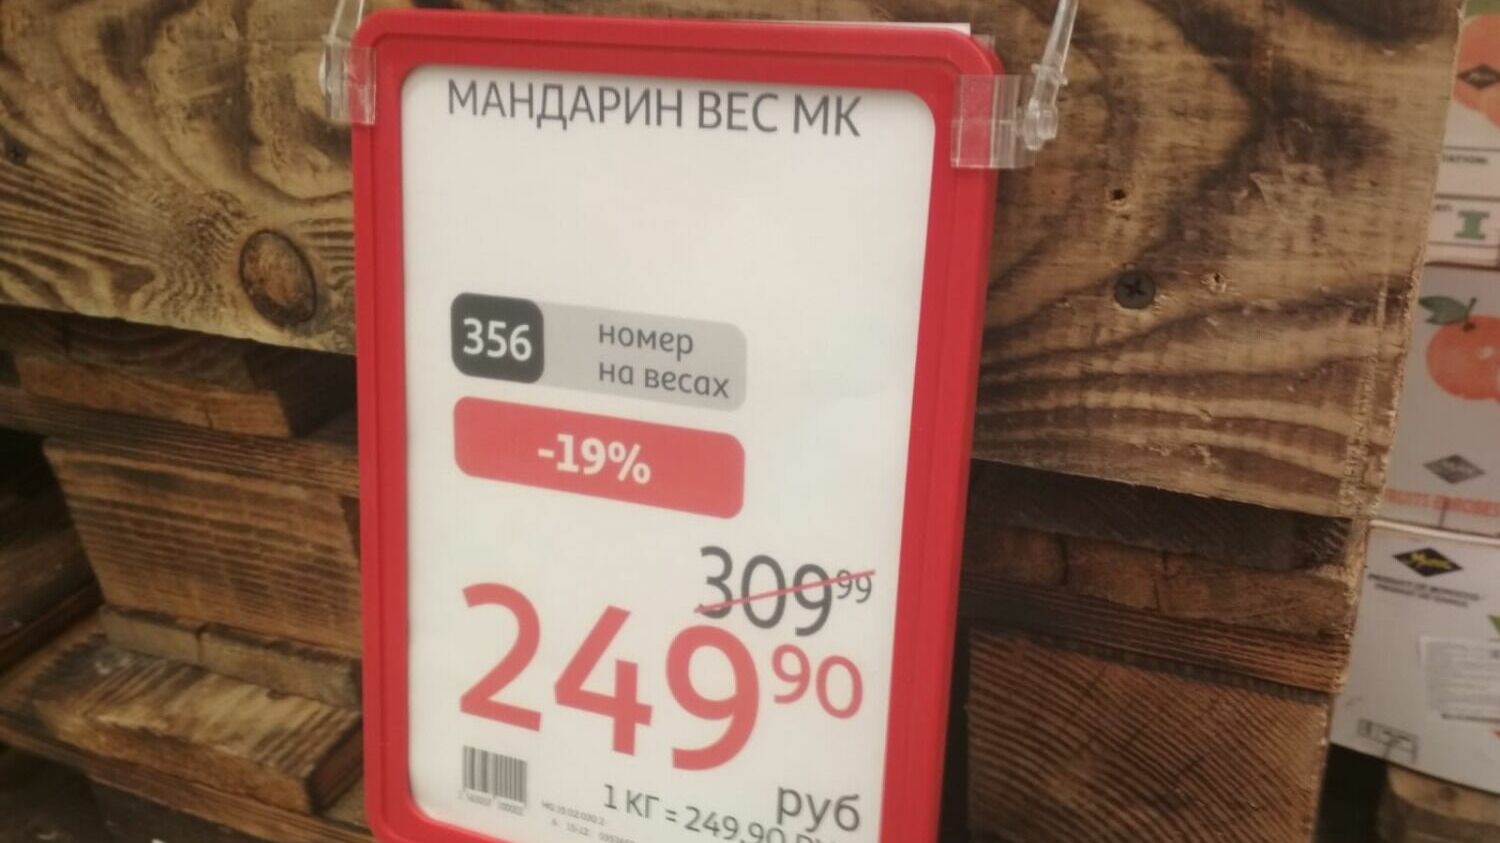 В волгоградском «Ашане» можно купить мандарины премиум-сегмента за 249,9 руб. за 1 кг